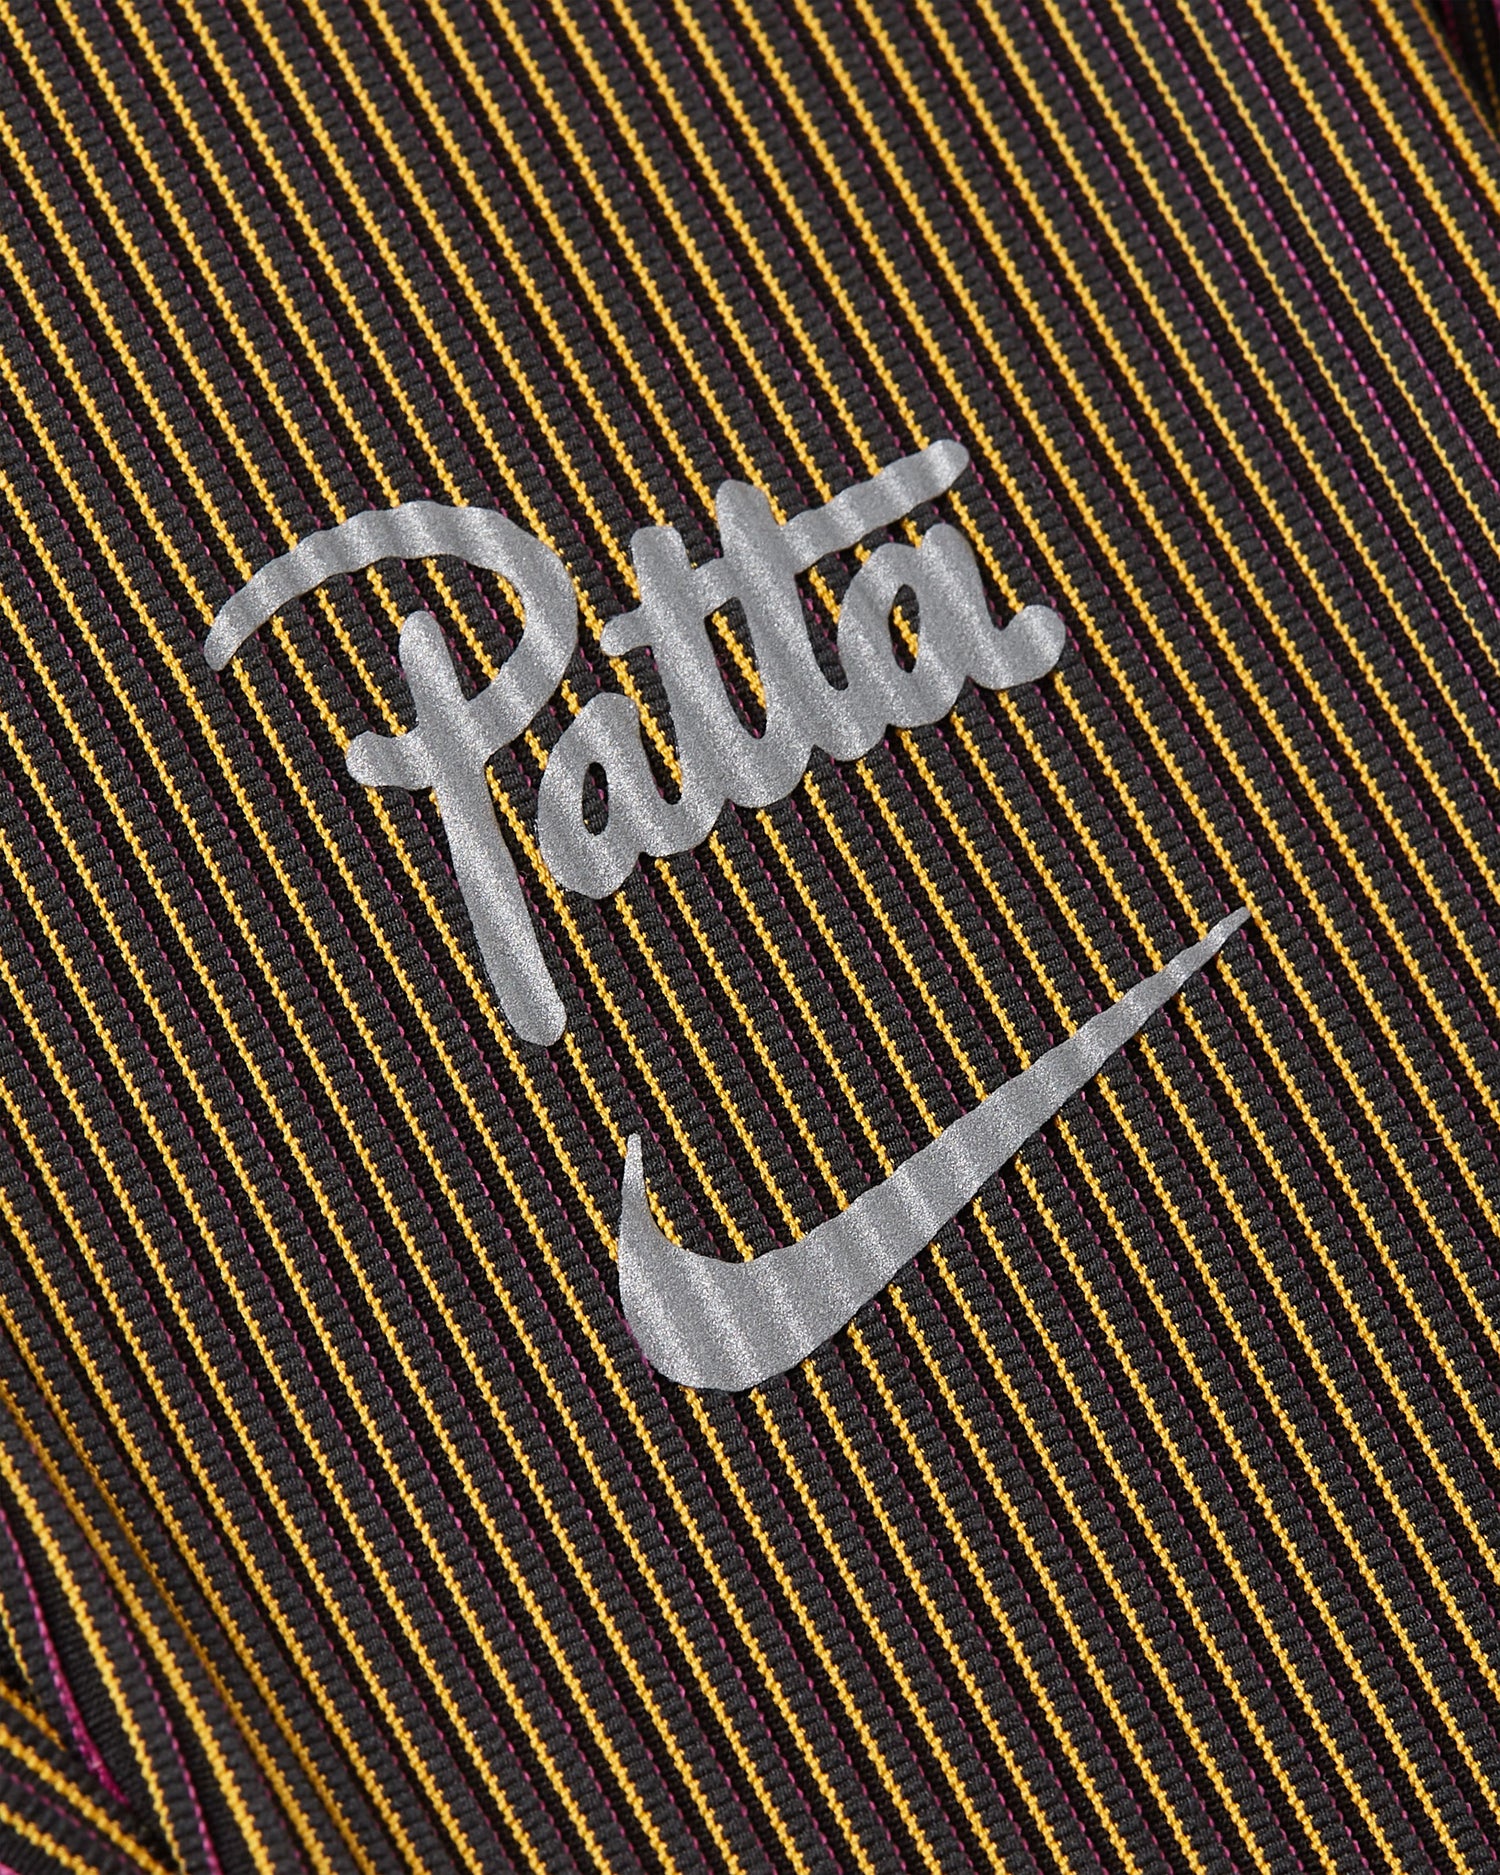 Nike x Patta Running Team Leggings (Fireberry/Sundial)